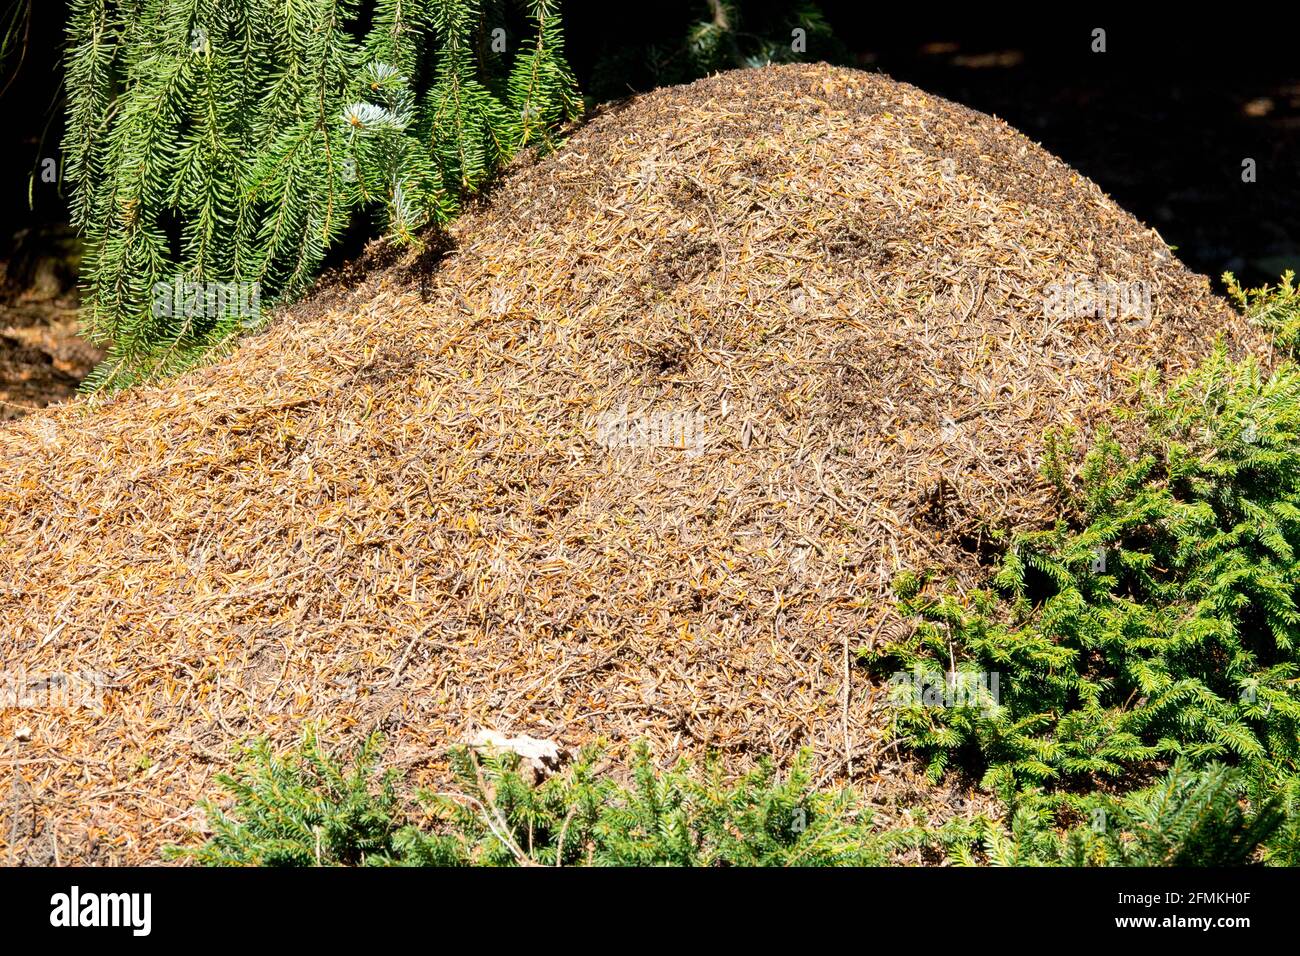 Das Ameisennest (Formica rufa) in einem böhmischen Ameisennest Stockfoto